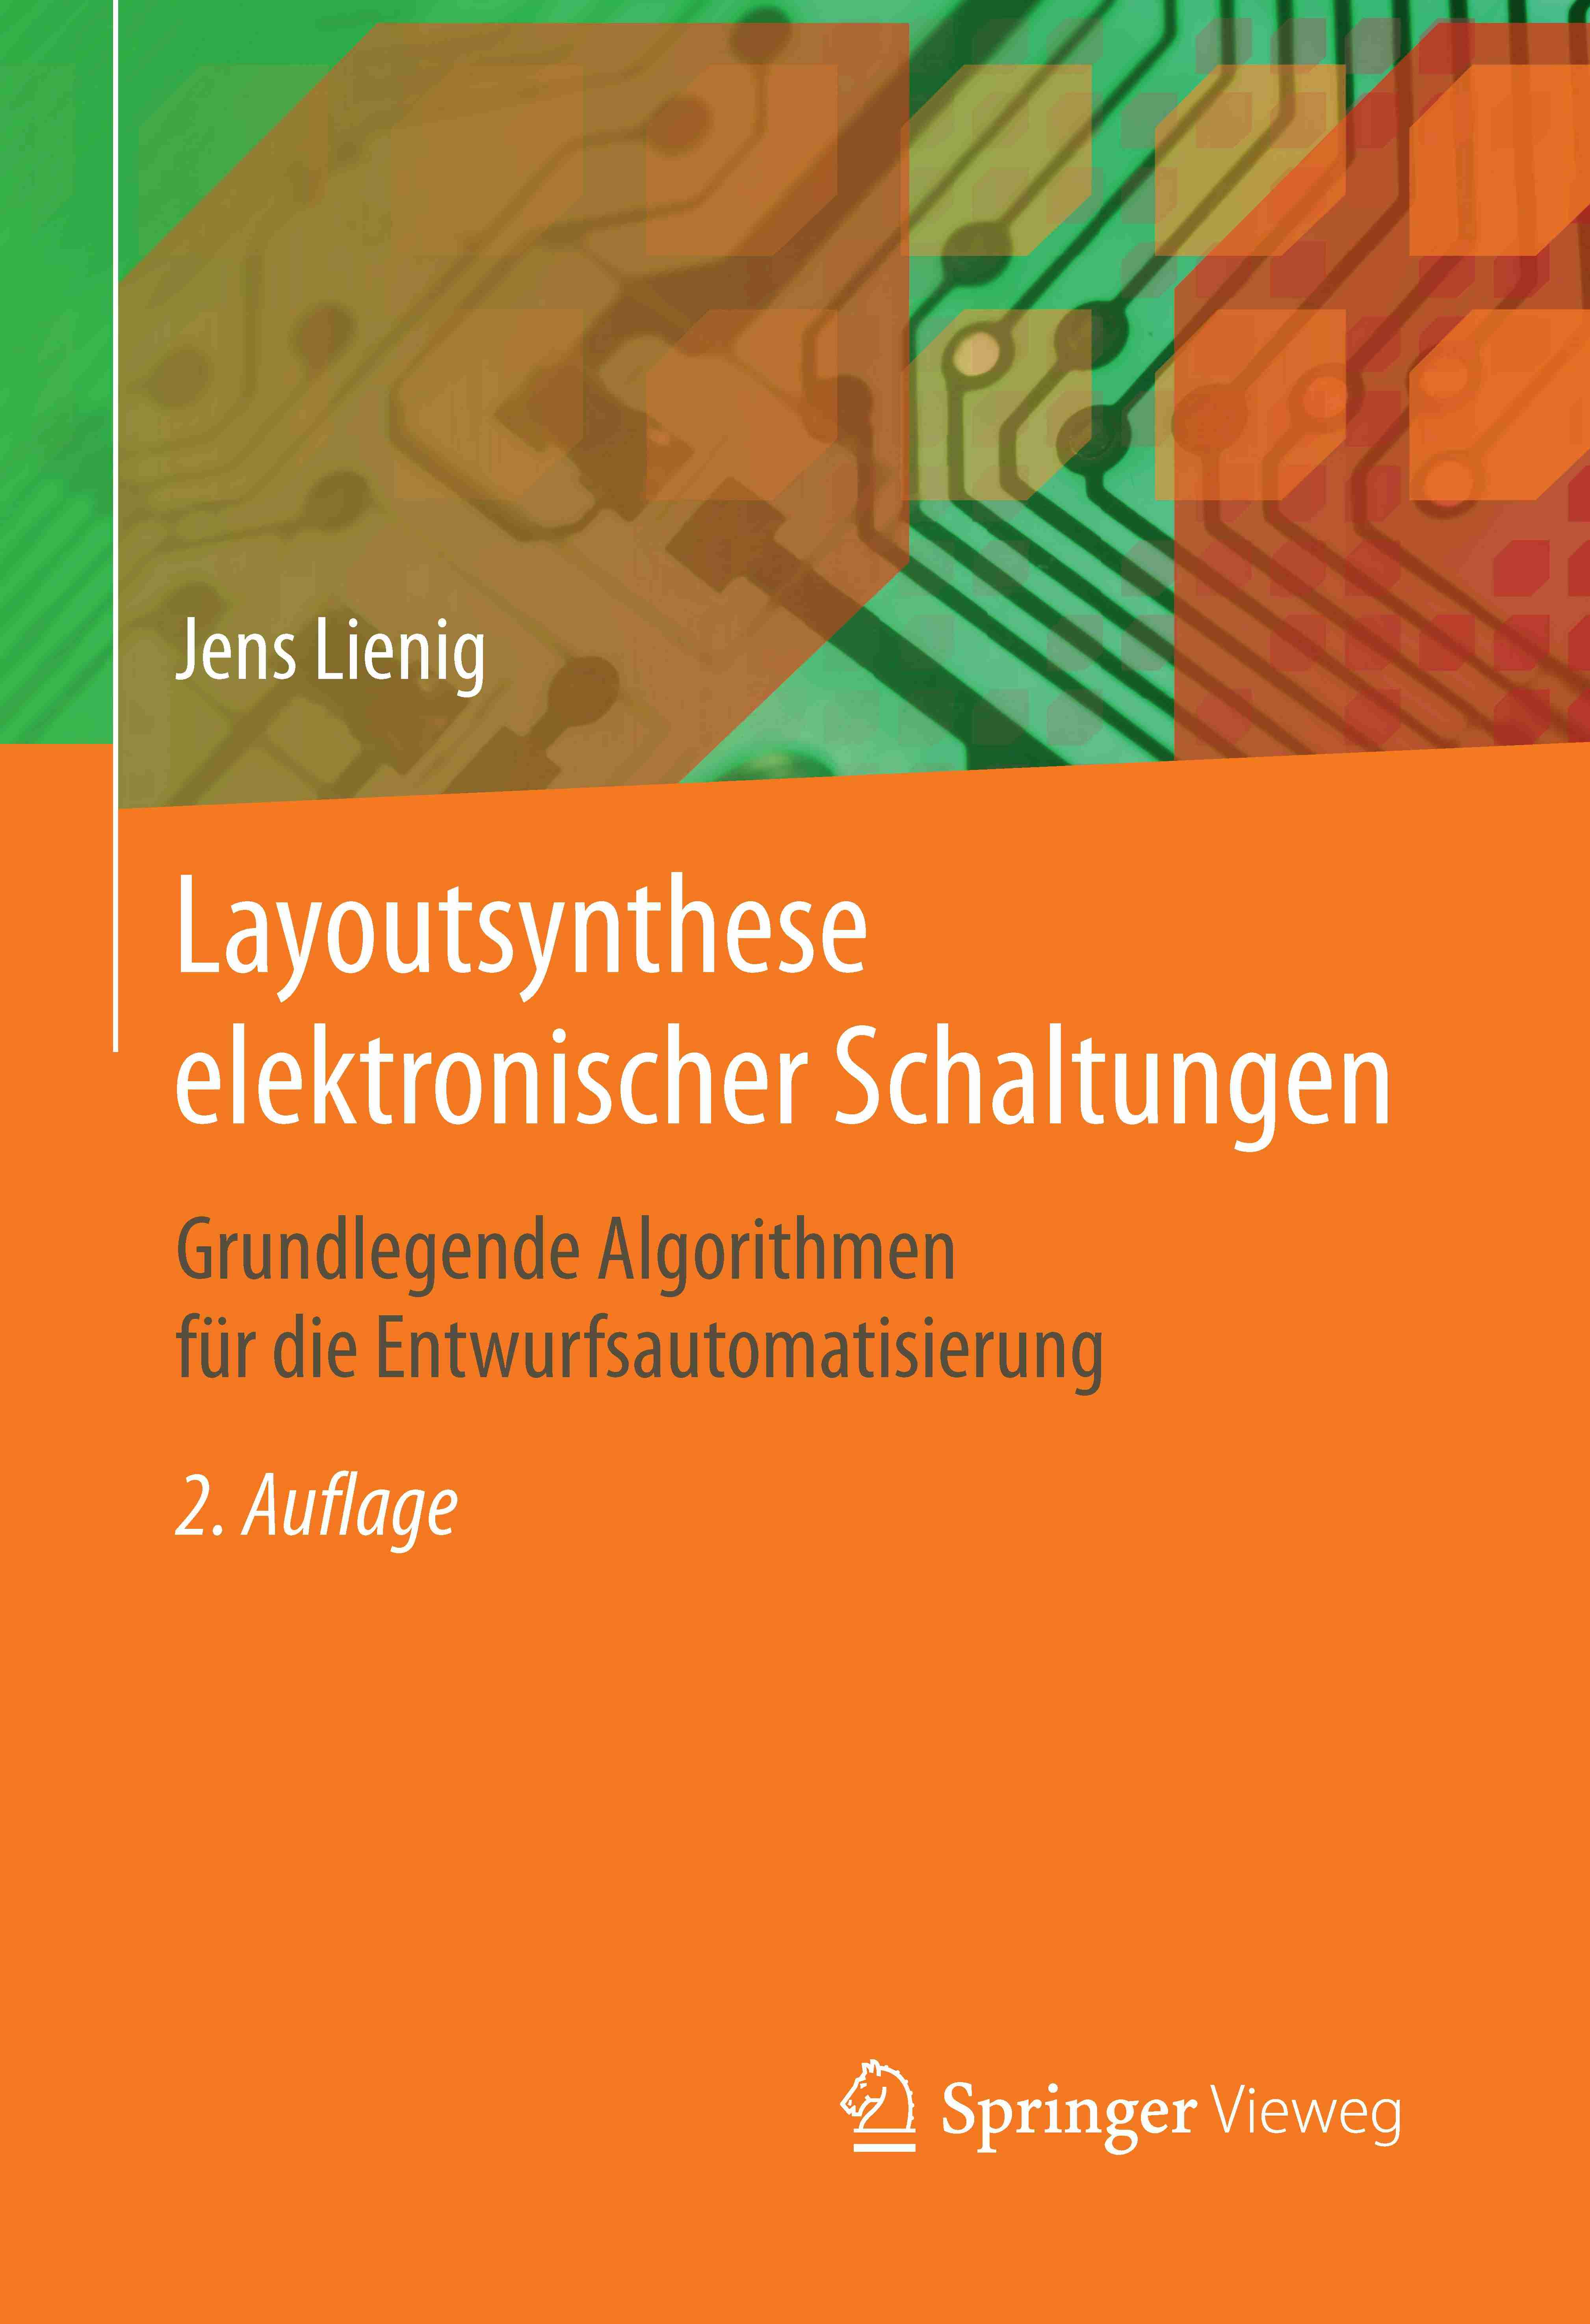 Lehrbuch: "Layoutsynthese elektronischer Schaltungen"